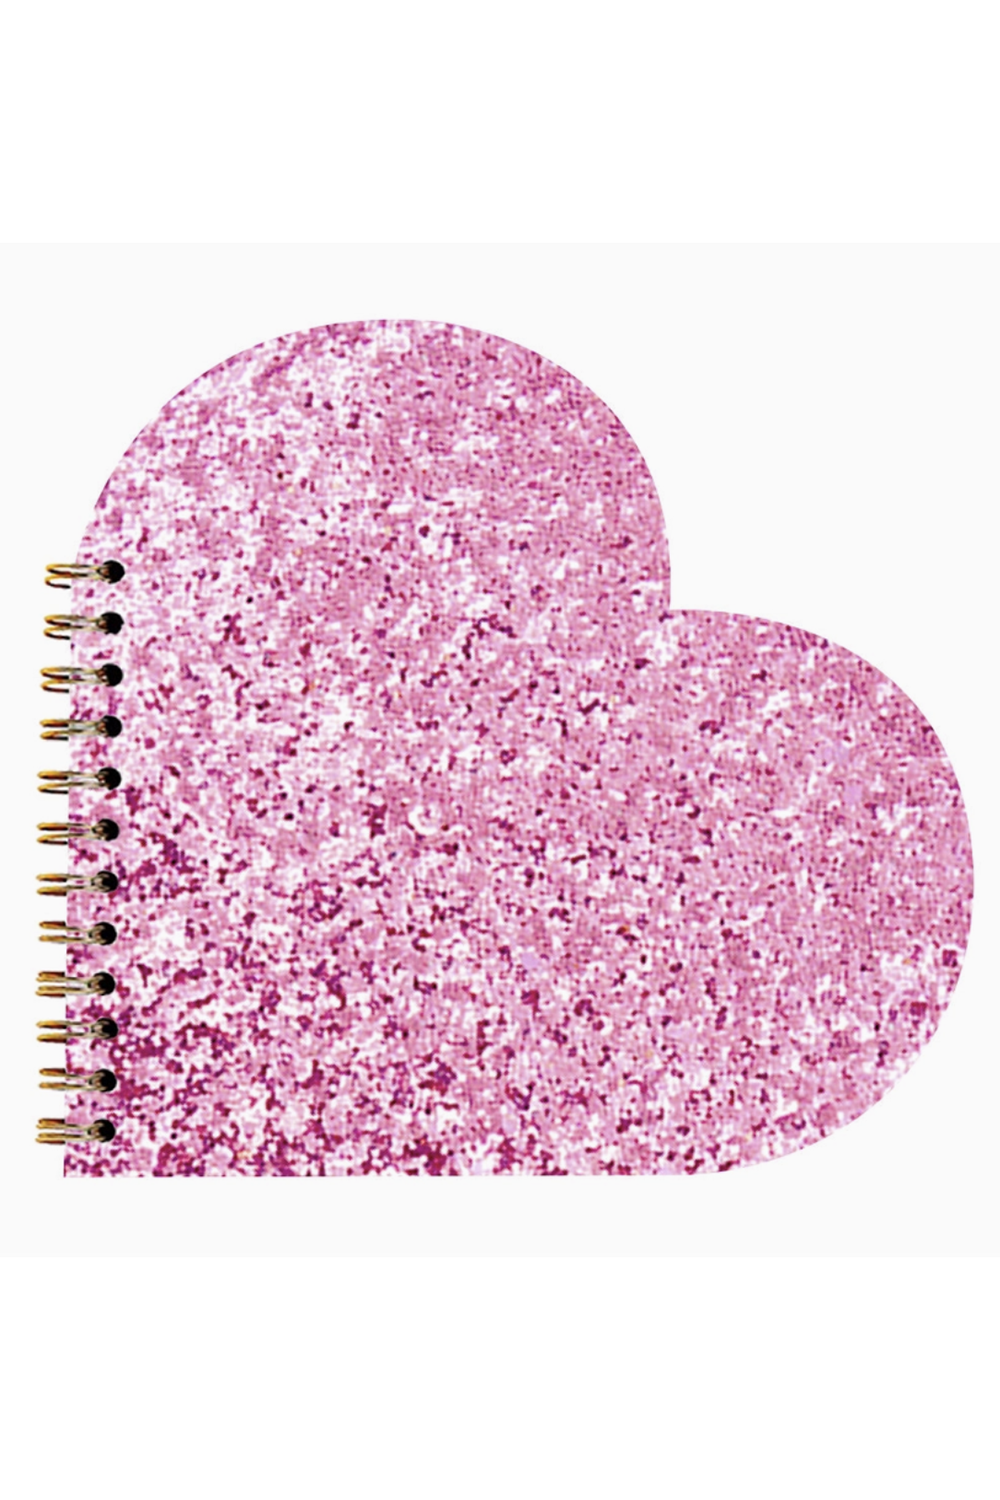 Valentine Notebook - Pink Glitter Heart